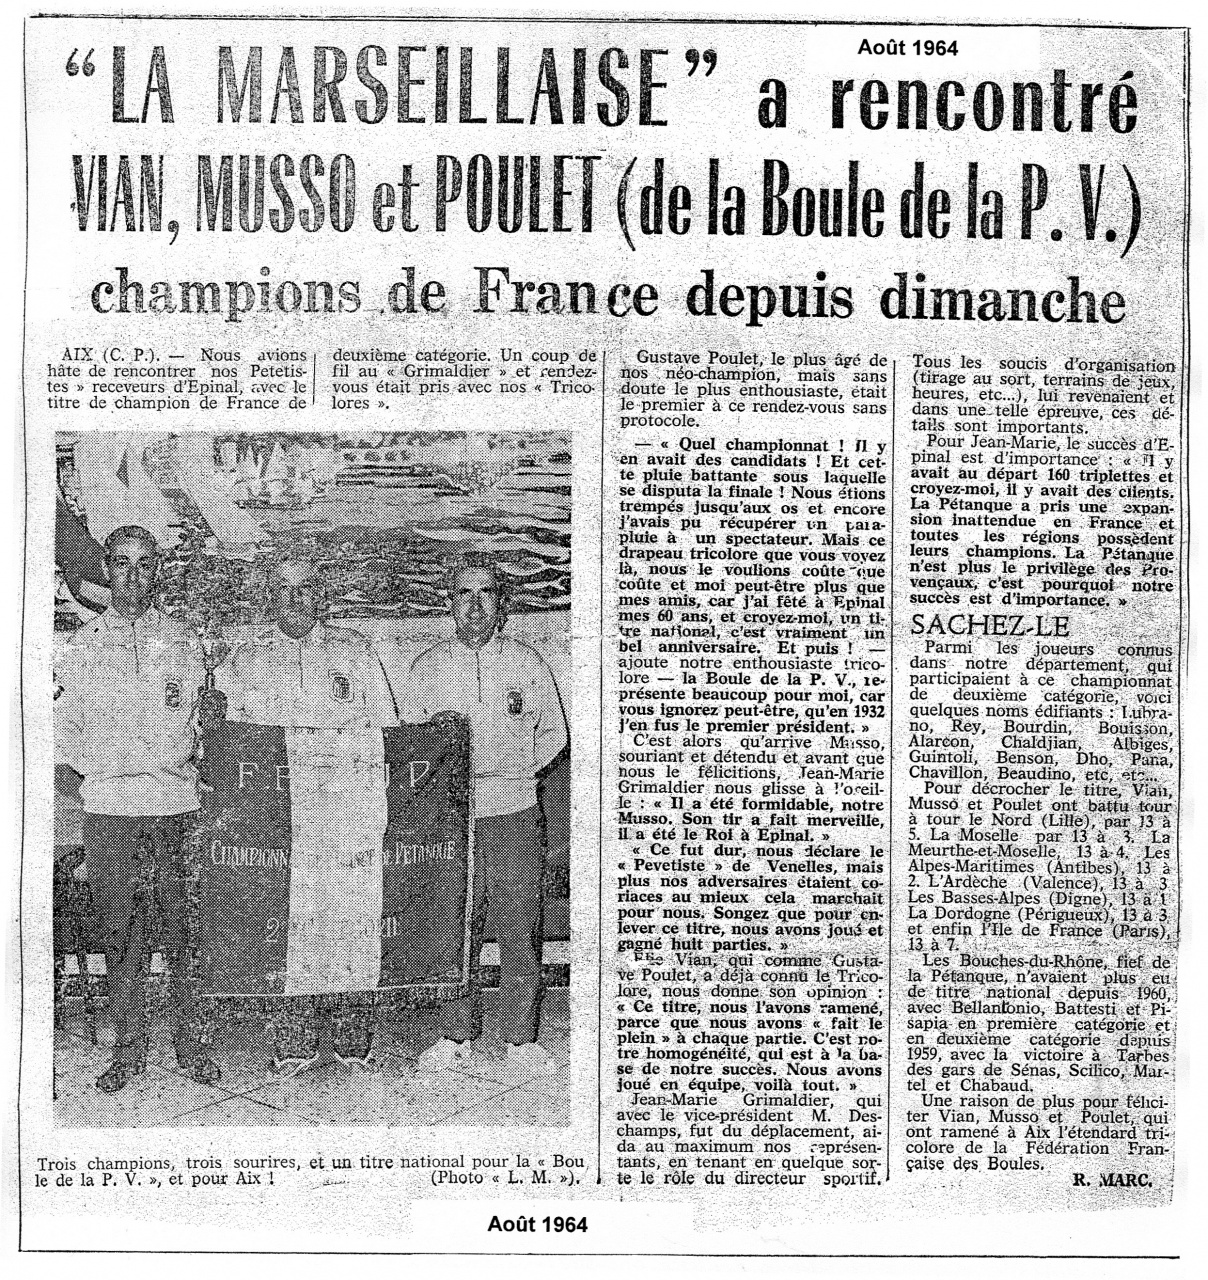 08-1964 Vian, Musso, Poulet, champions de France